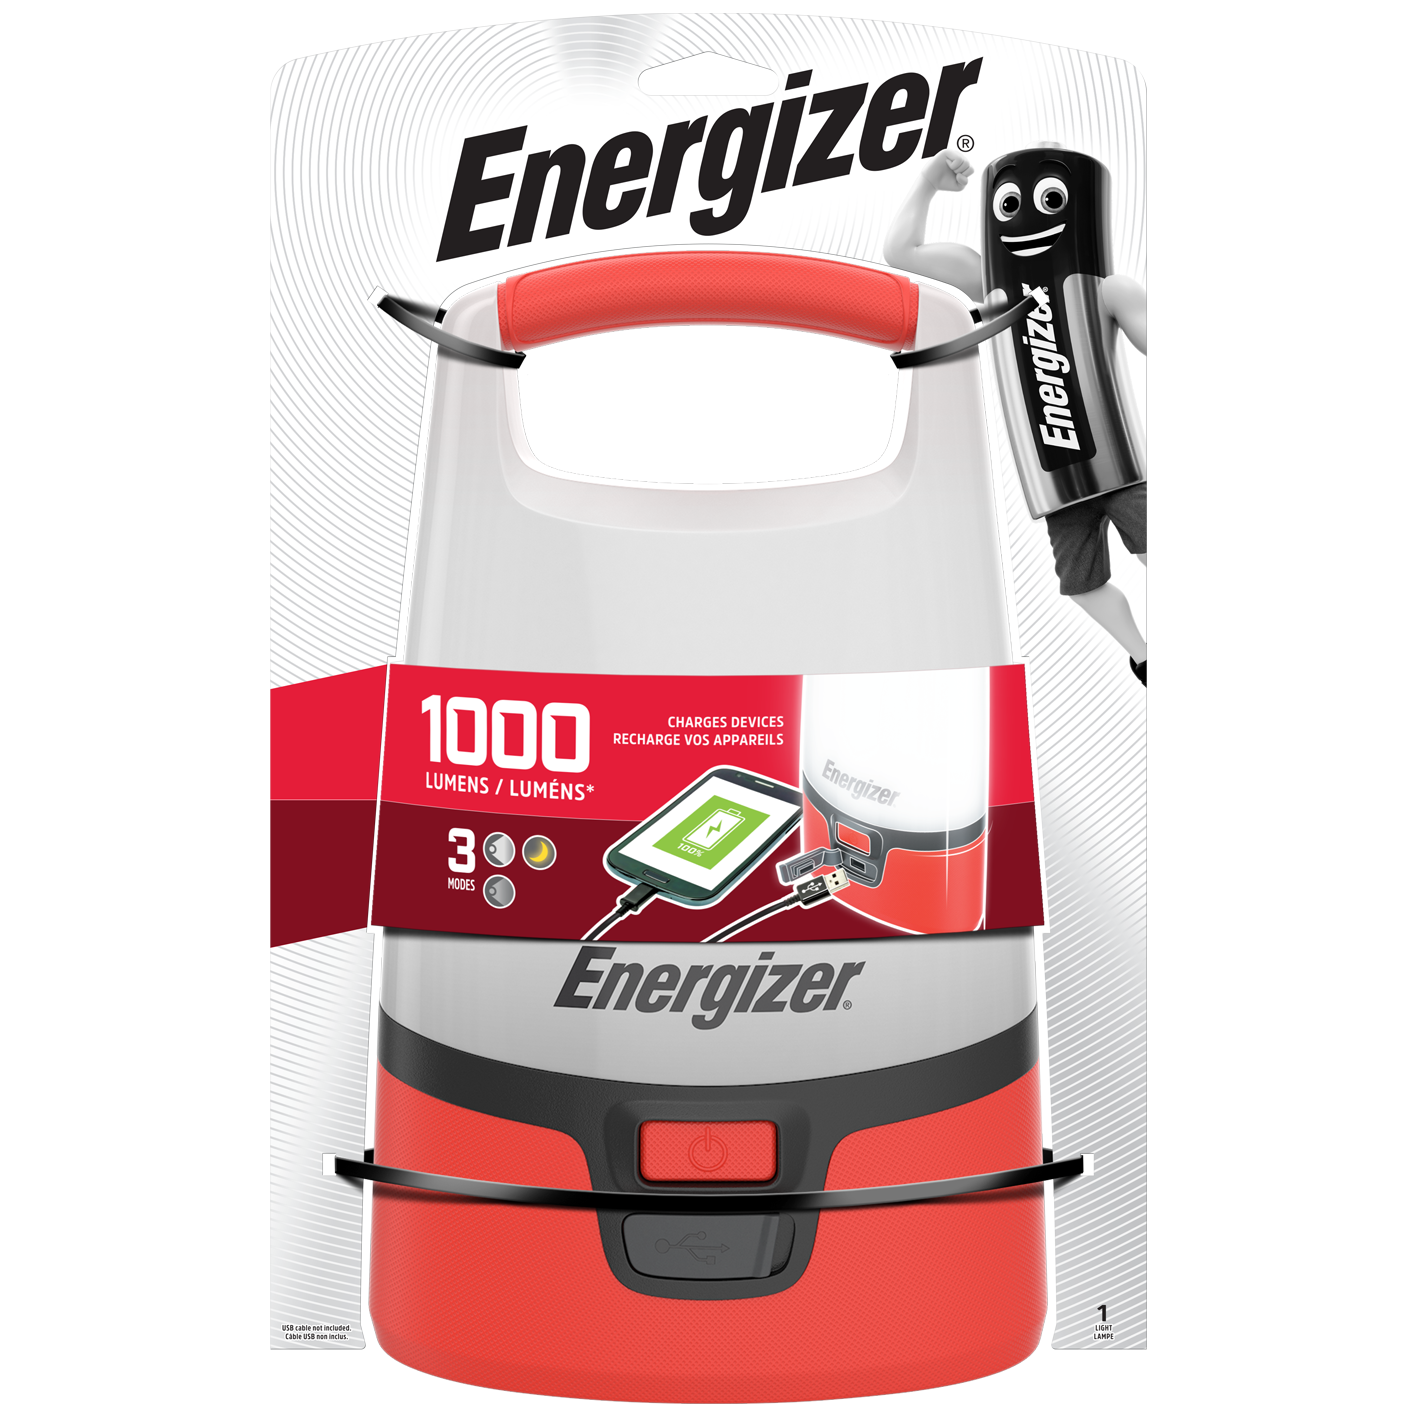 Energizer LED Camping Lantern + Powerbank - 1000 Lumens